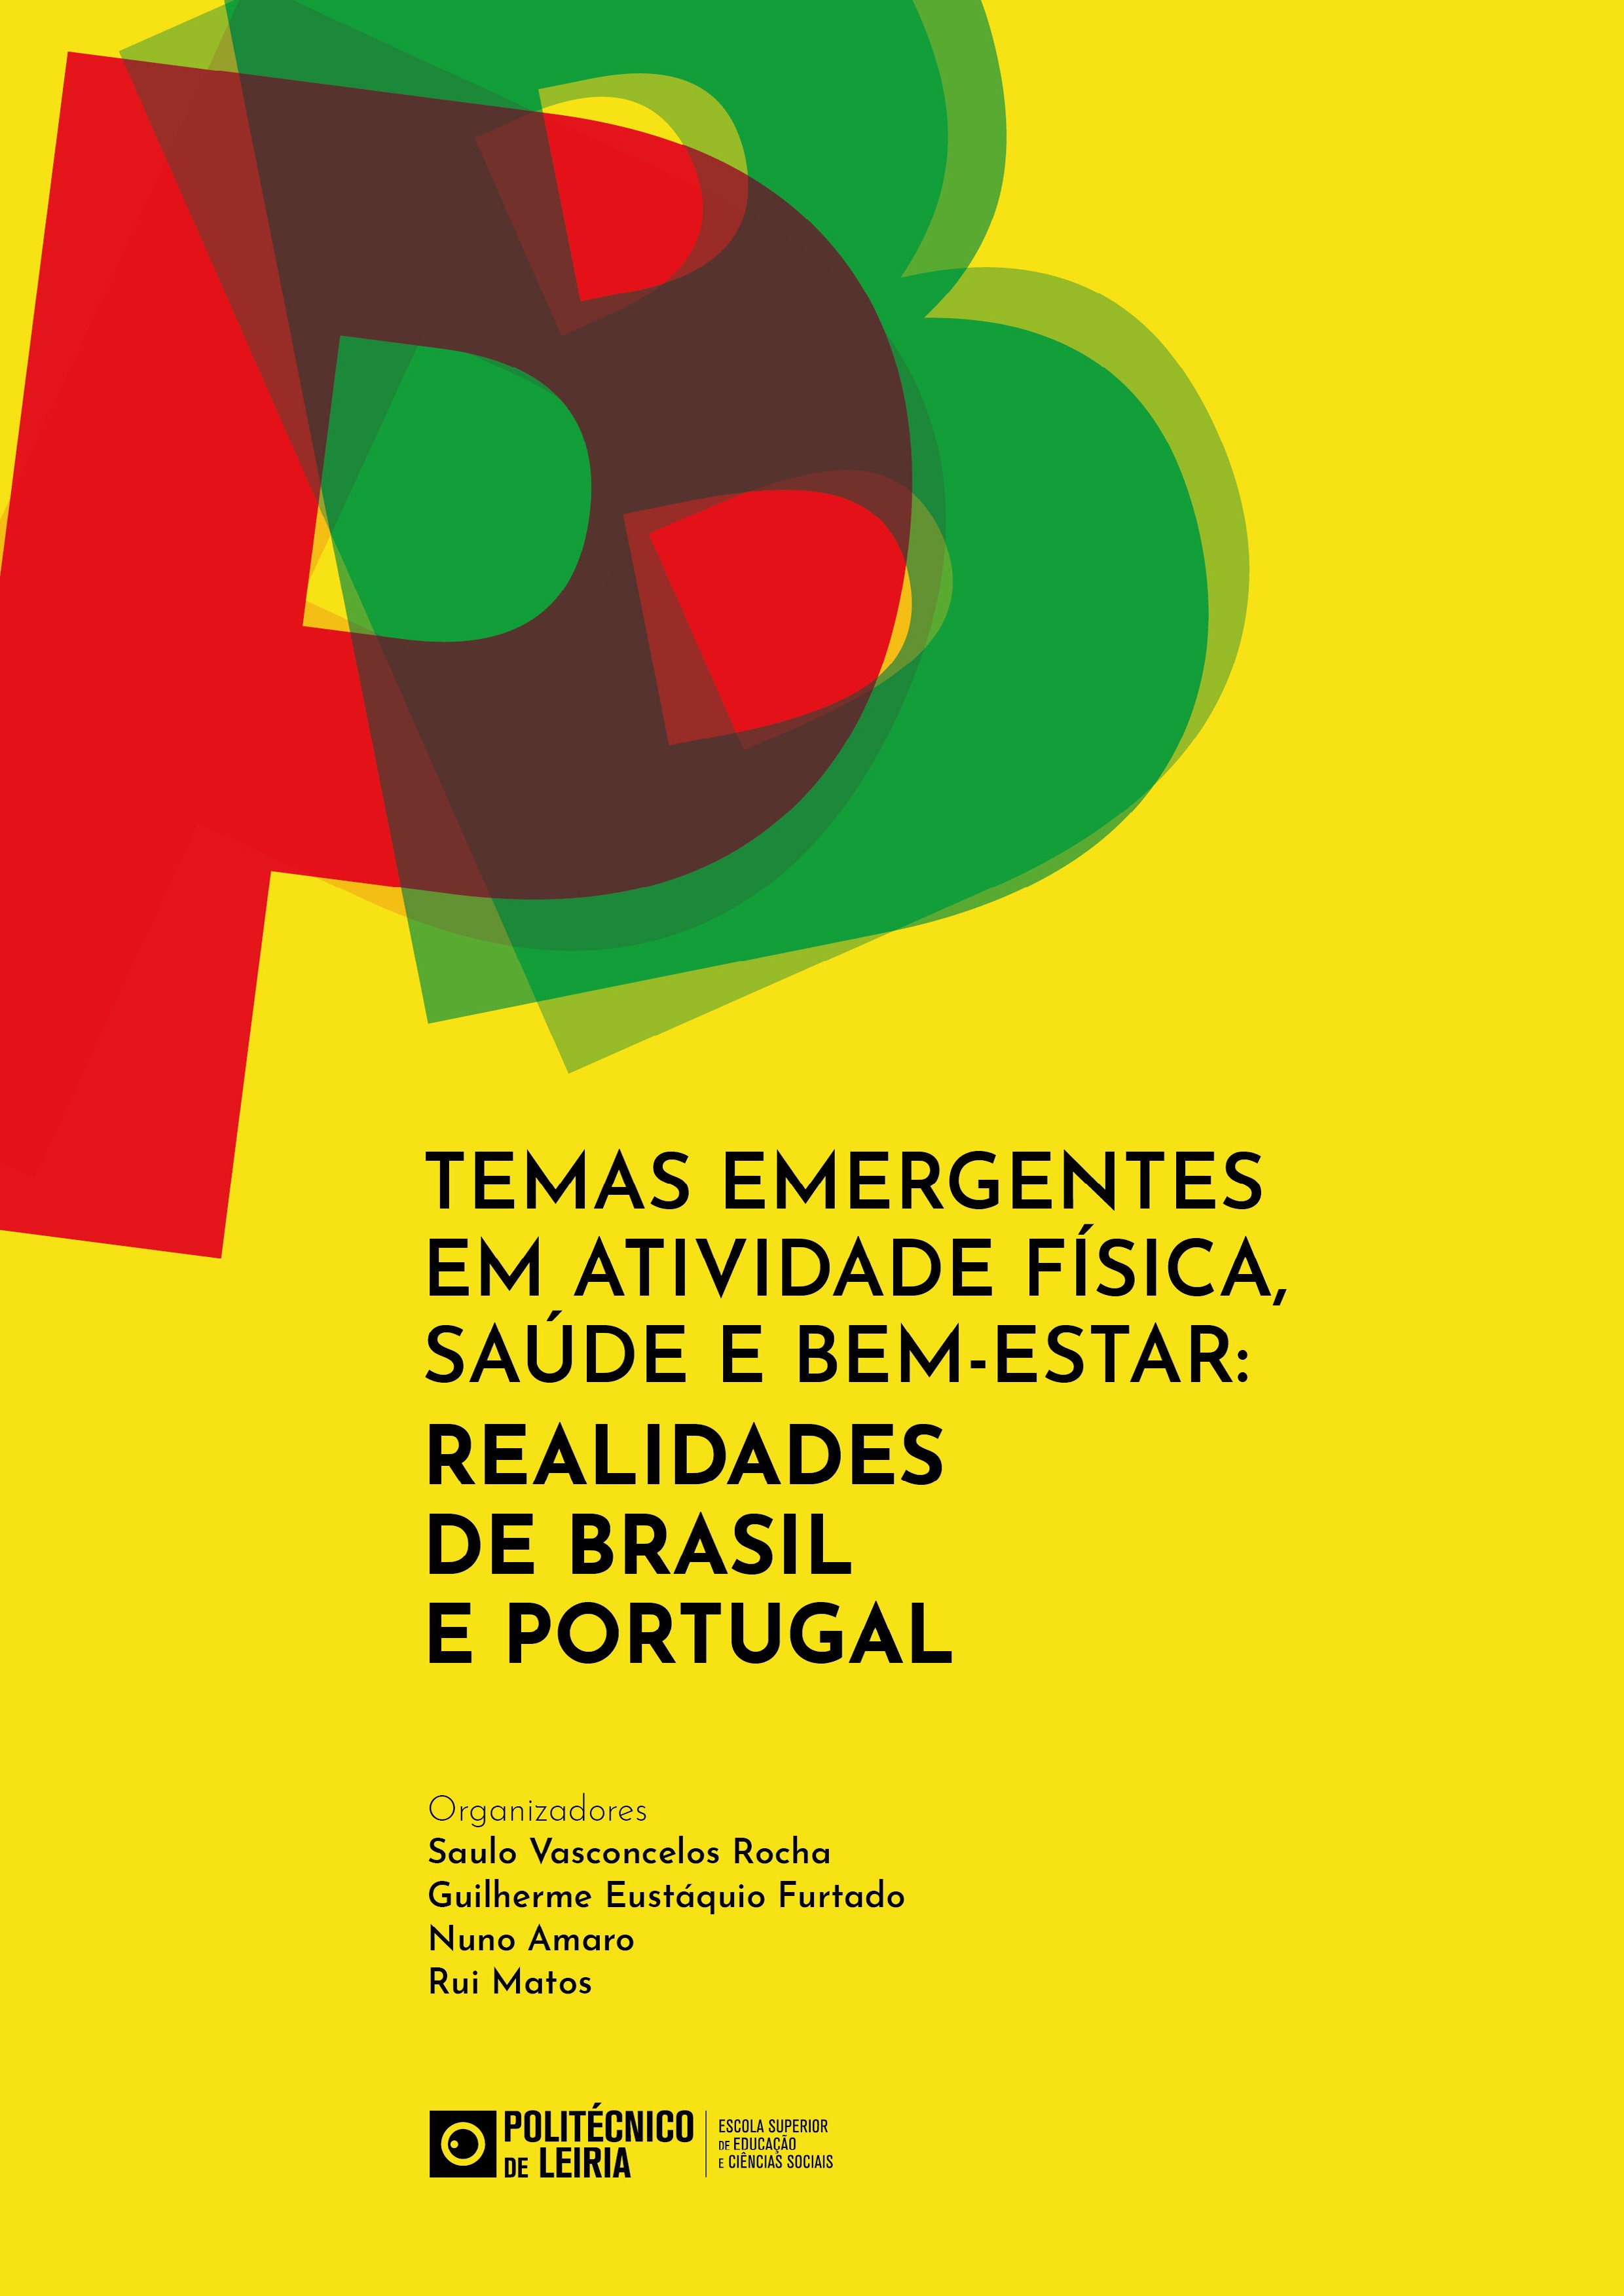 Capa com a letra P a vermelho e um B a verde, sob um fundo amarelo a representar as cores dos dois países, Portugal e Brazil.